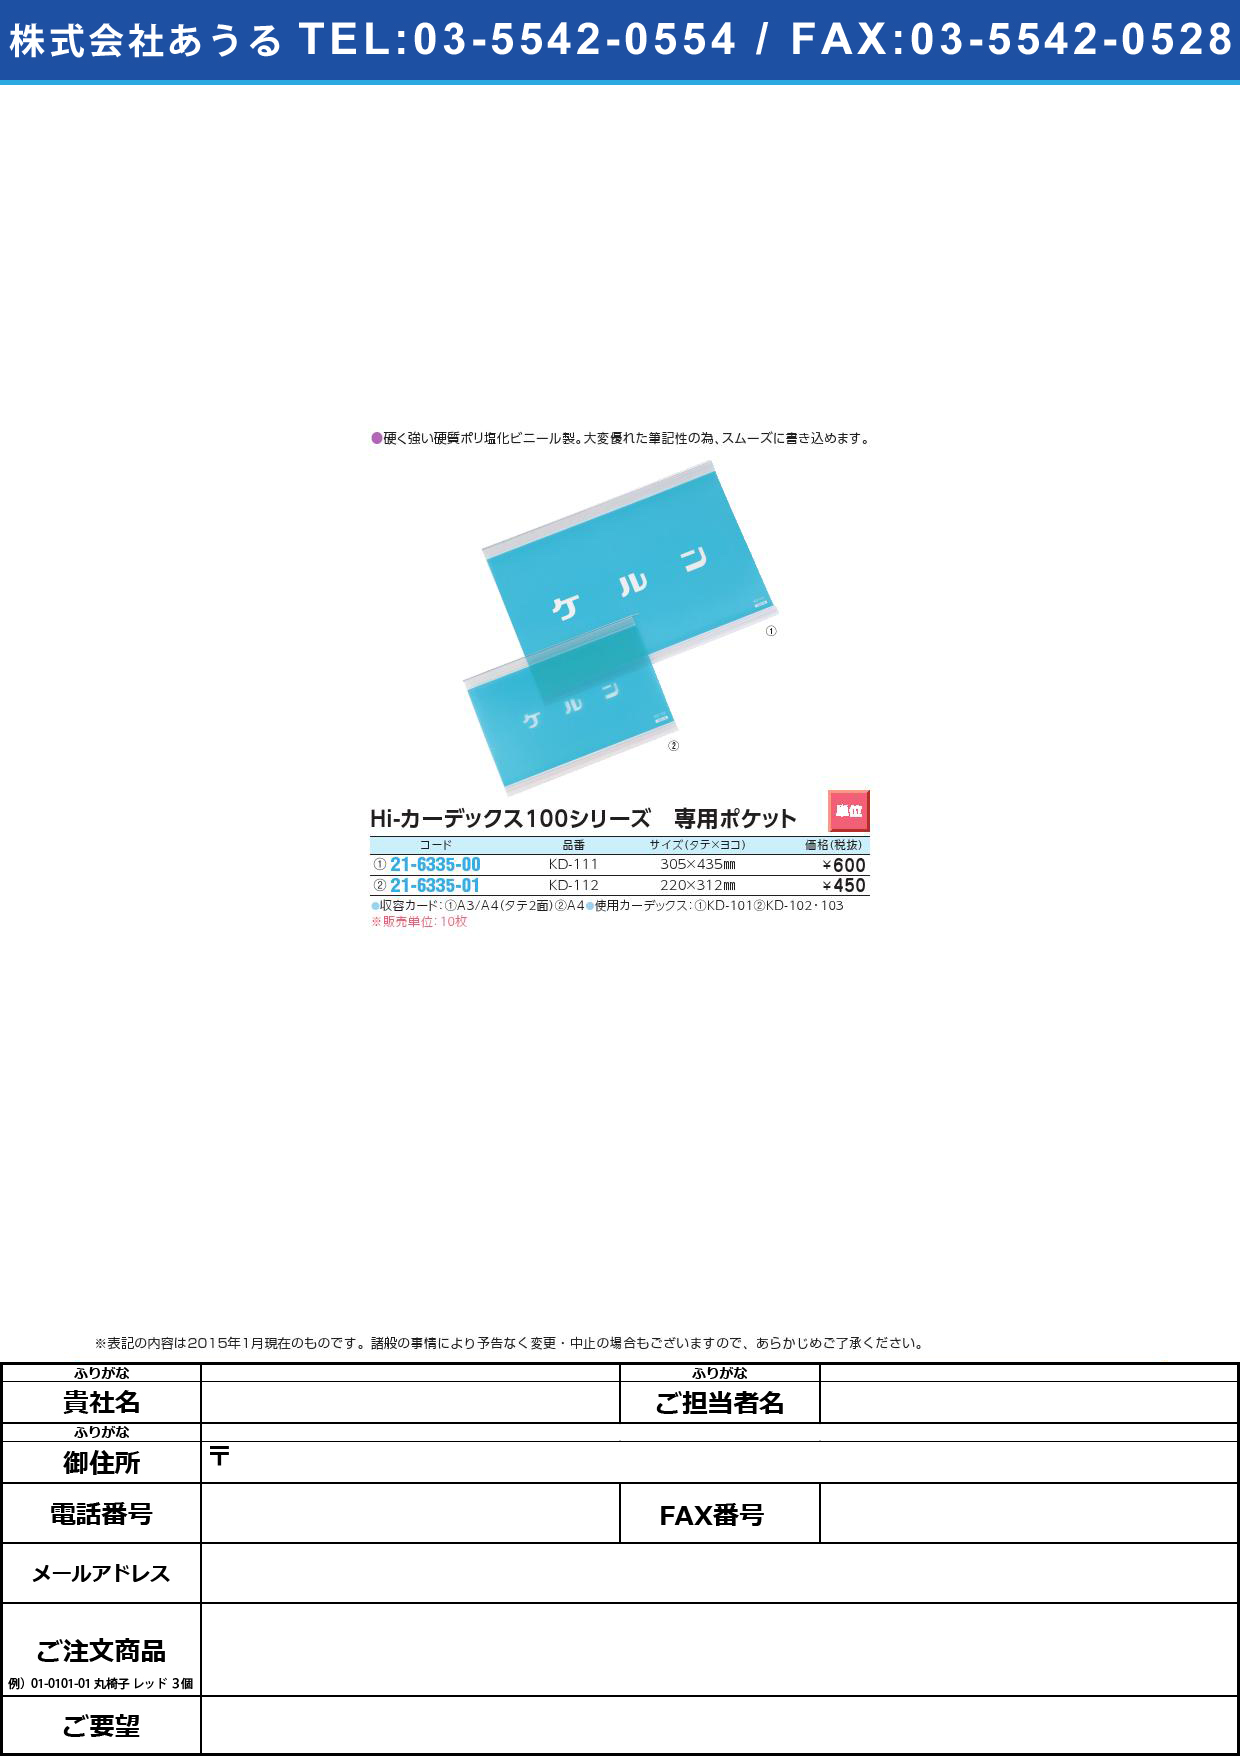 Ｈｉカーデックス１００専用ポケット HIｶｰﾃﾞｯｸｽｾﾝﾖｳﾎﾟｹｯﾄ(21-6335-01)KD-112(A4)